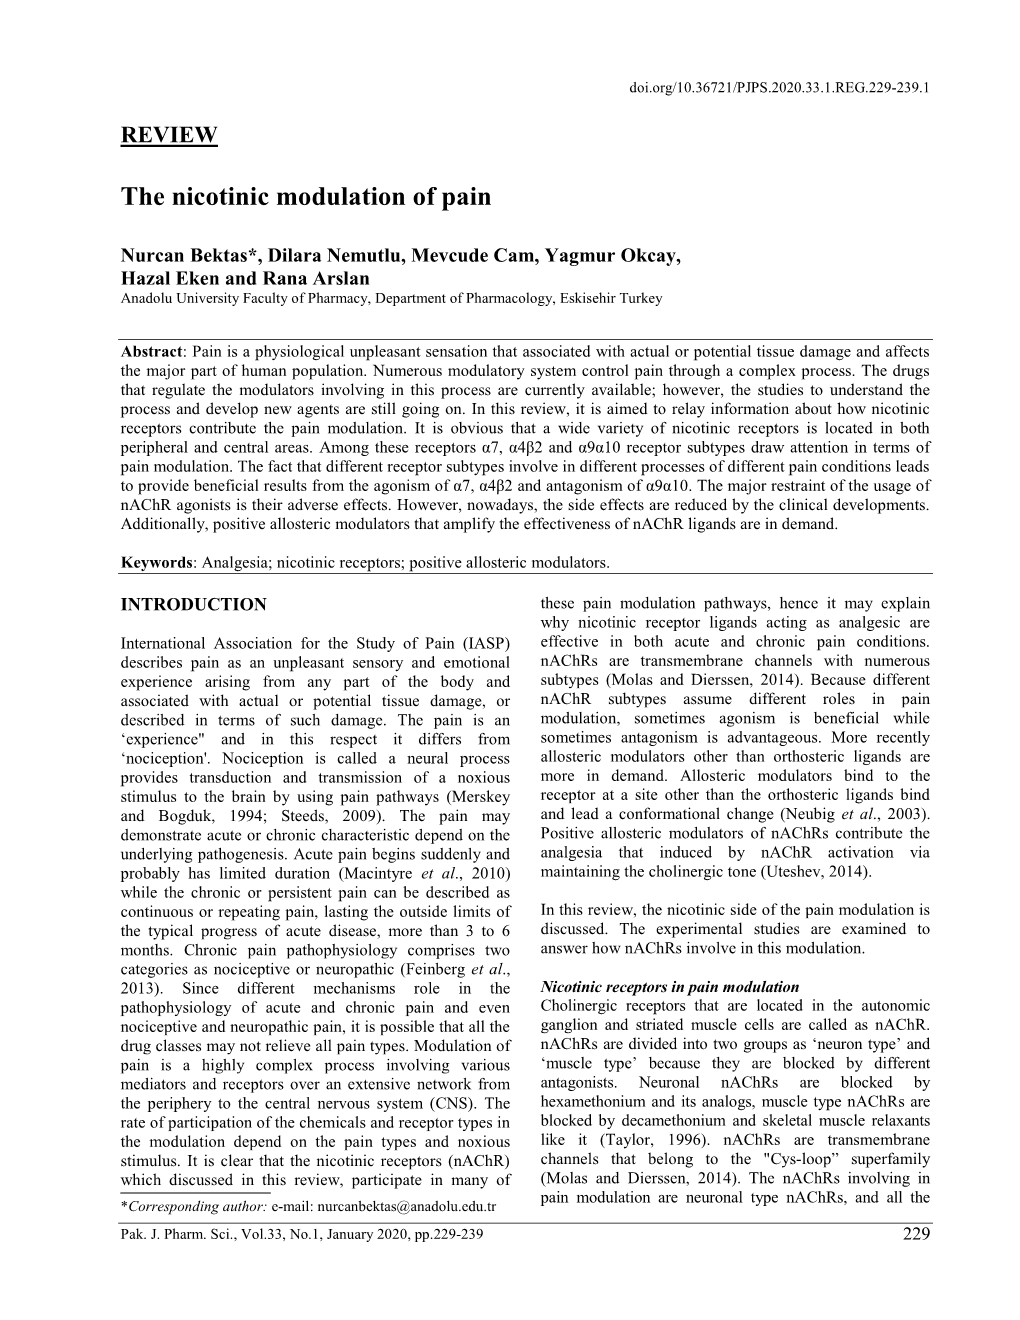 The Nicotinic Modulation of Pain